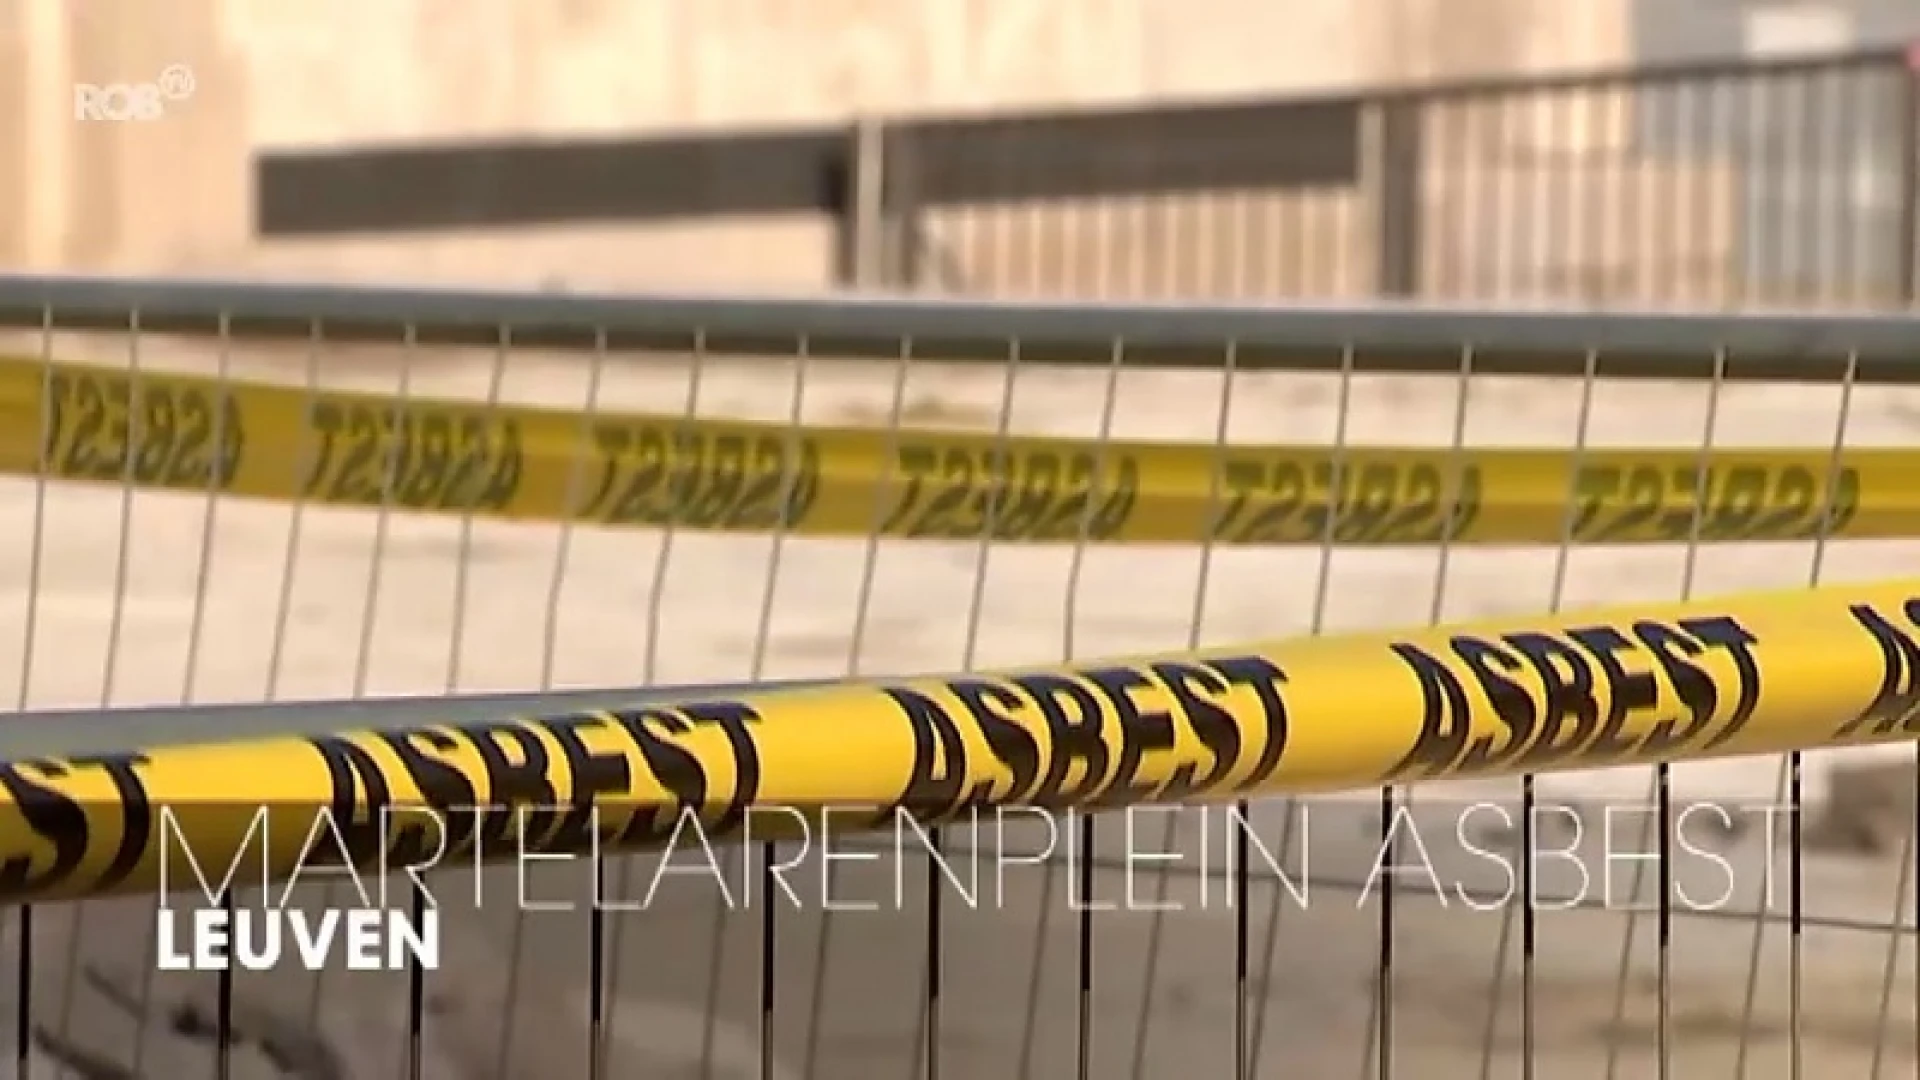 Buis die asbest bevat gevonden bij werken aan fietsenstalling op Martelarenplein